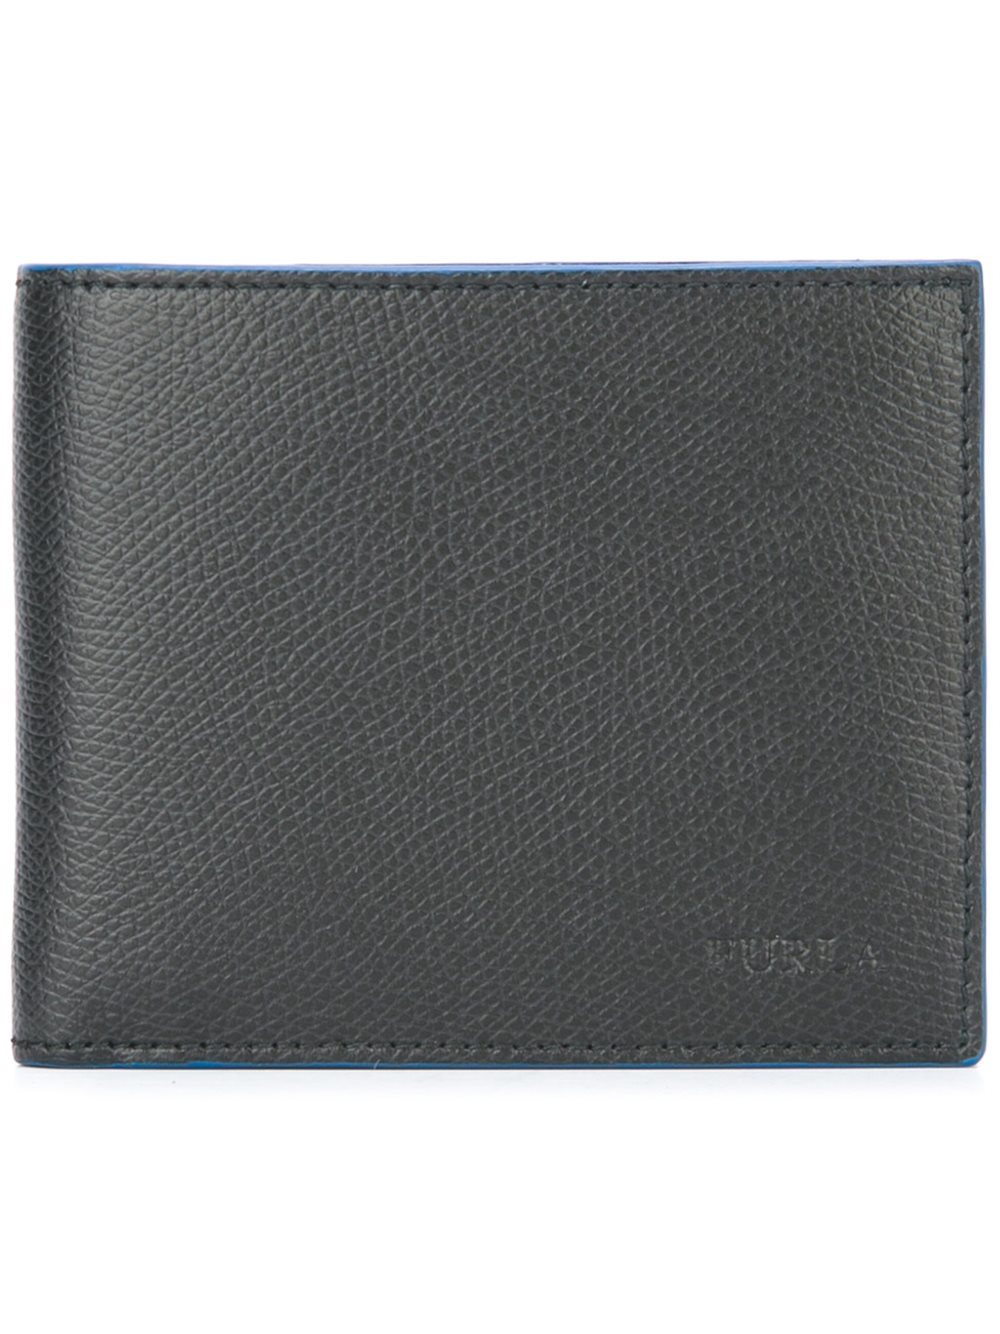 Lyst - Furla Billfold Wallet in Black for Men